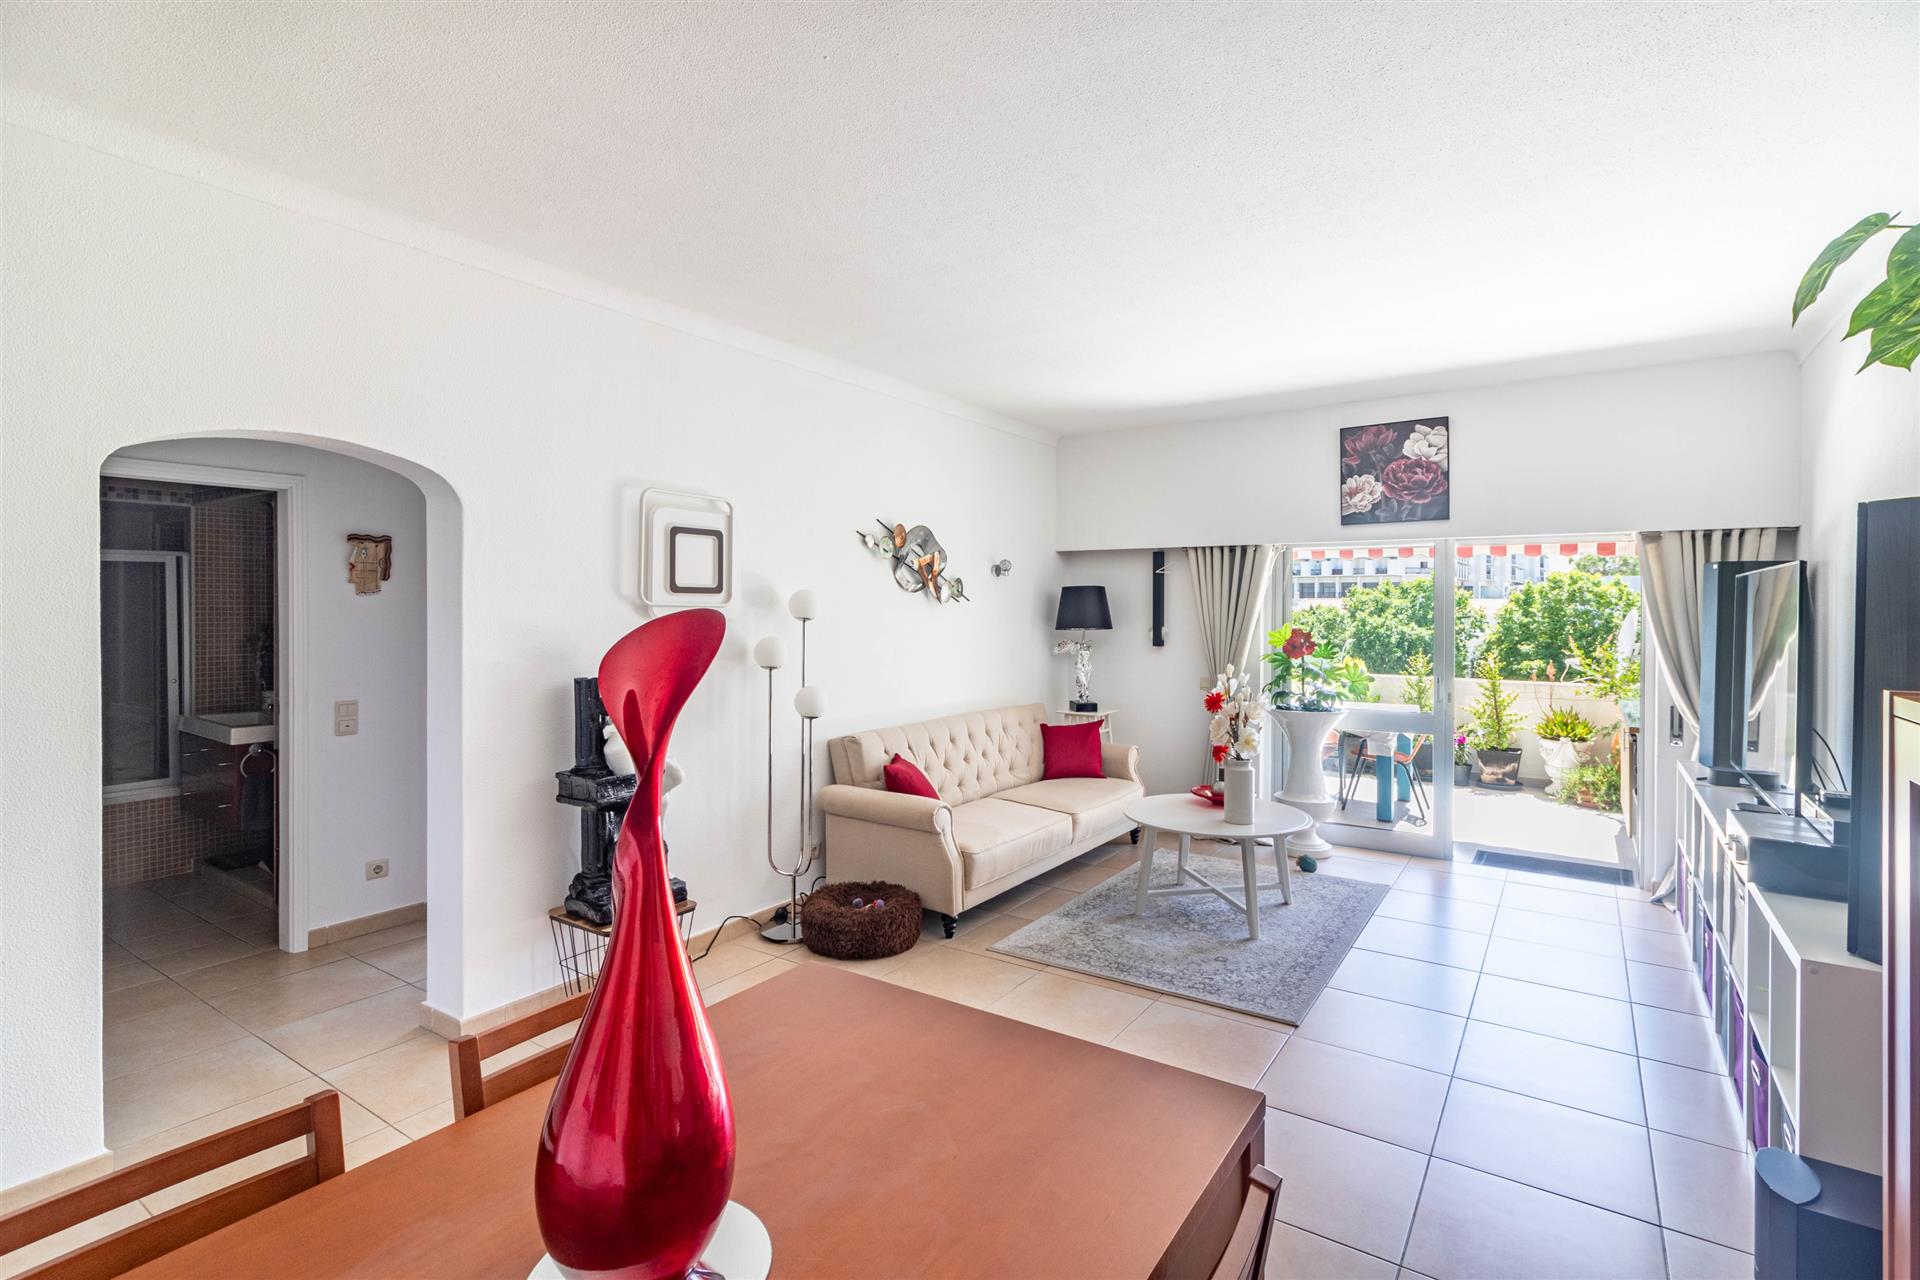 Bel et vaste appartement de 2 chambres très lumineux localisé à Albufeira, Algarve.